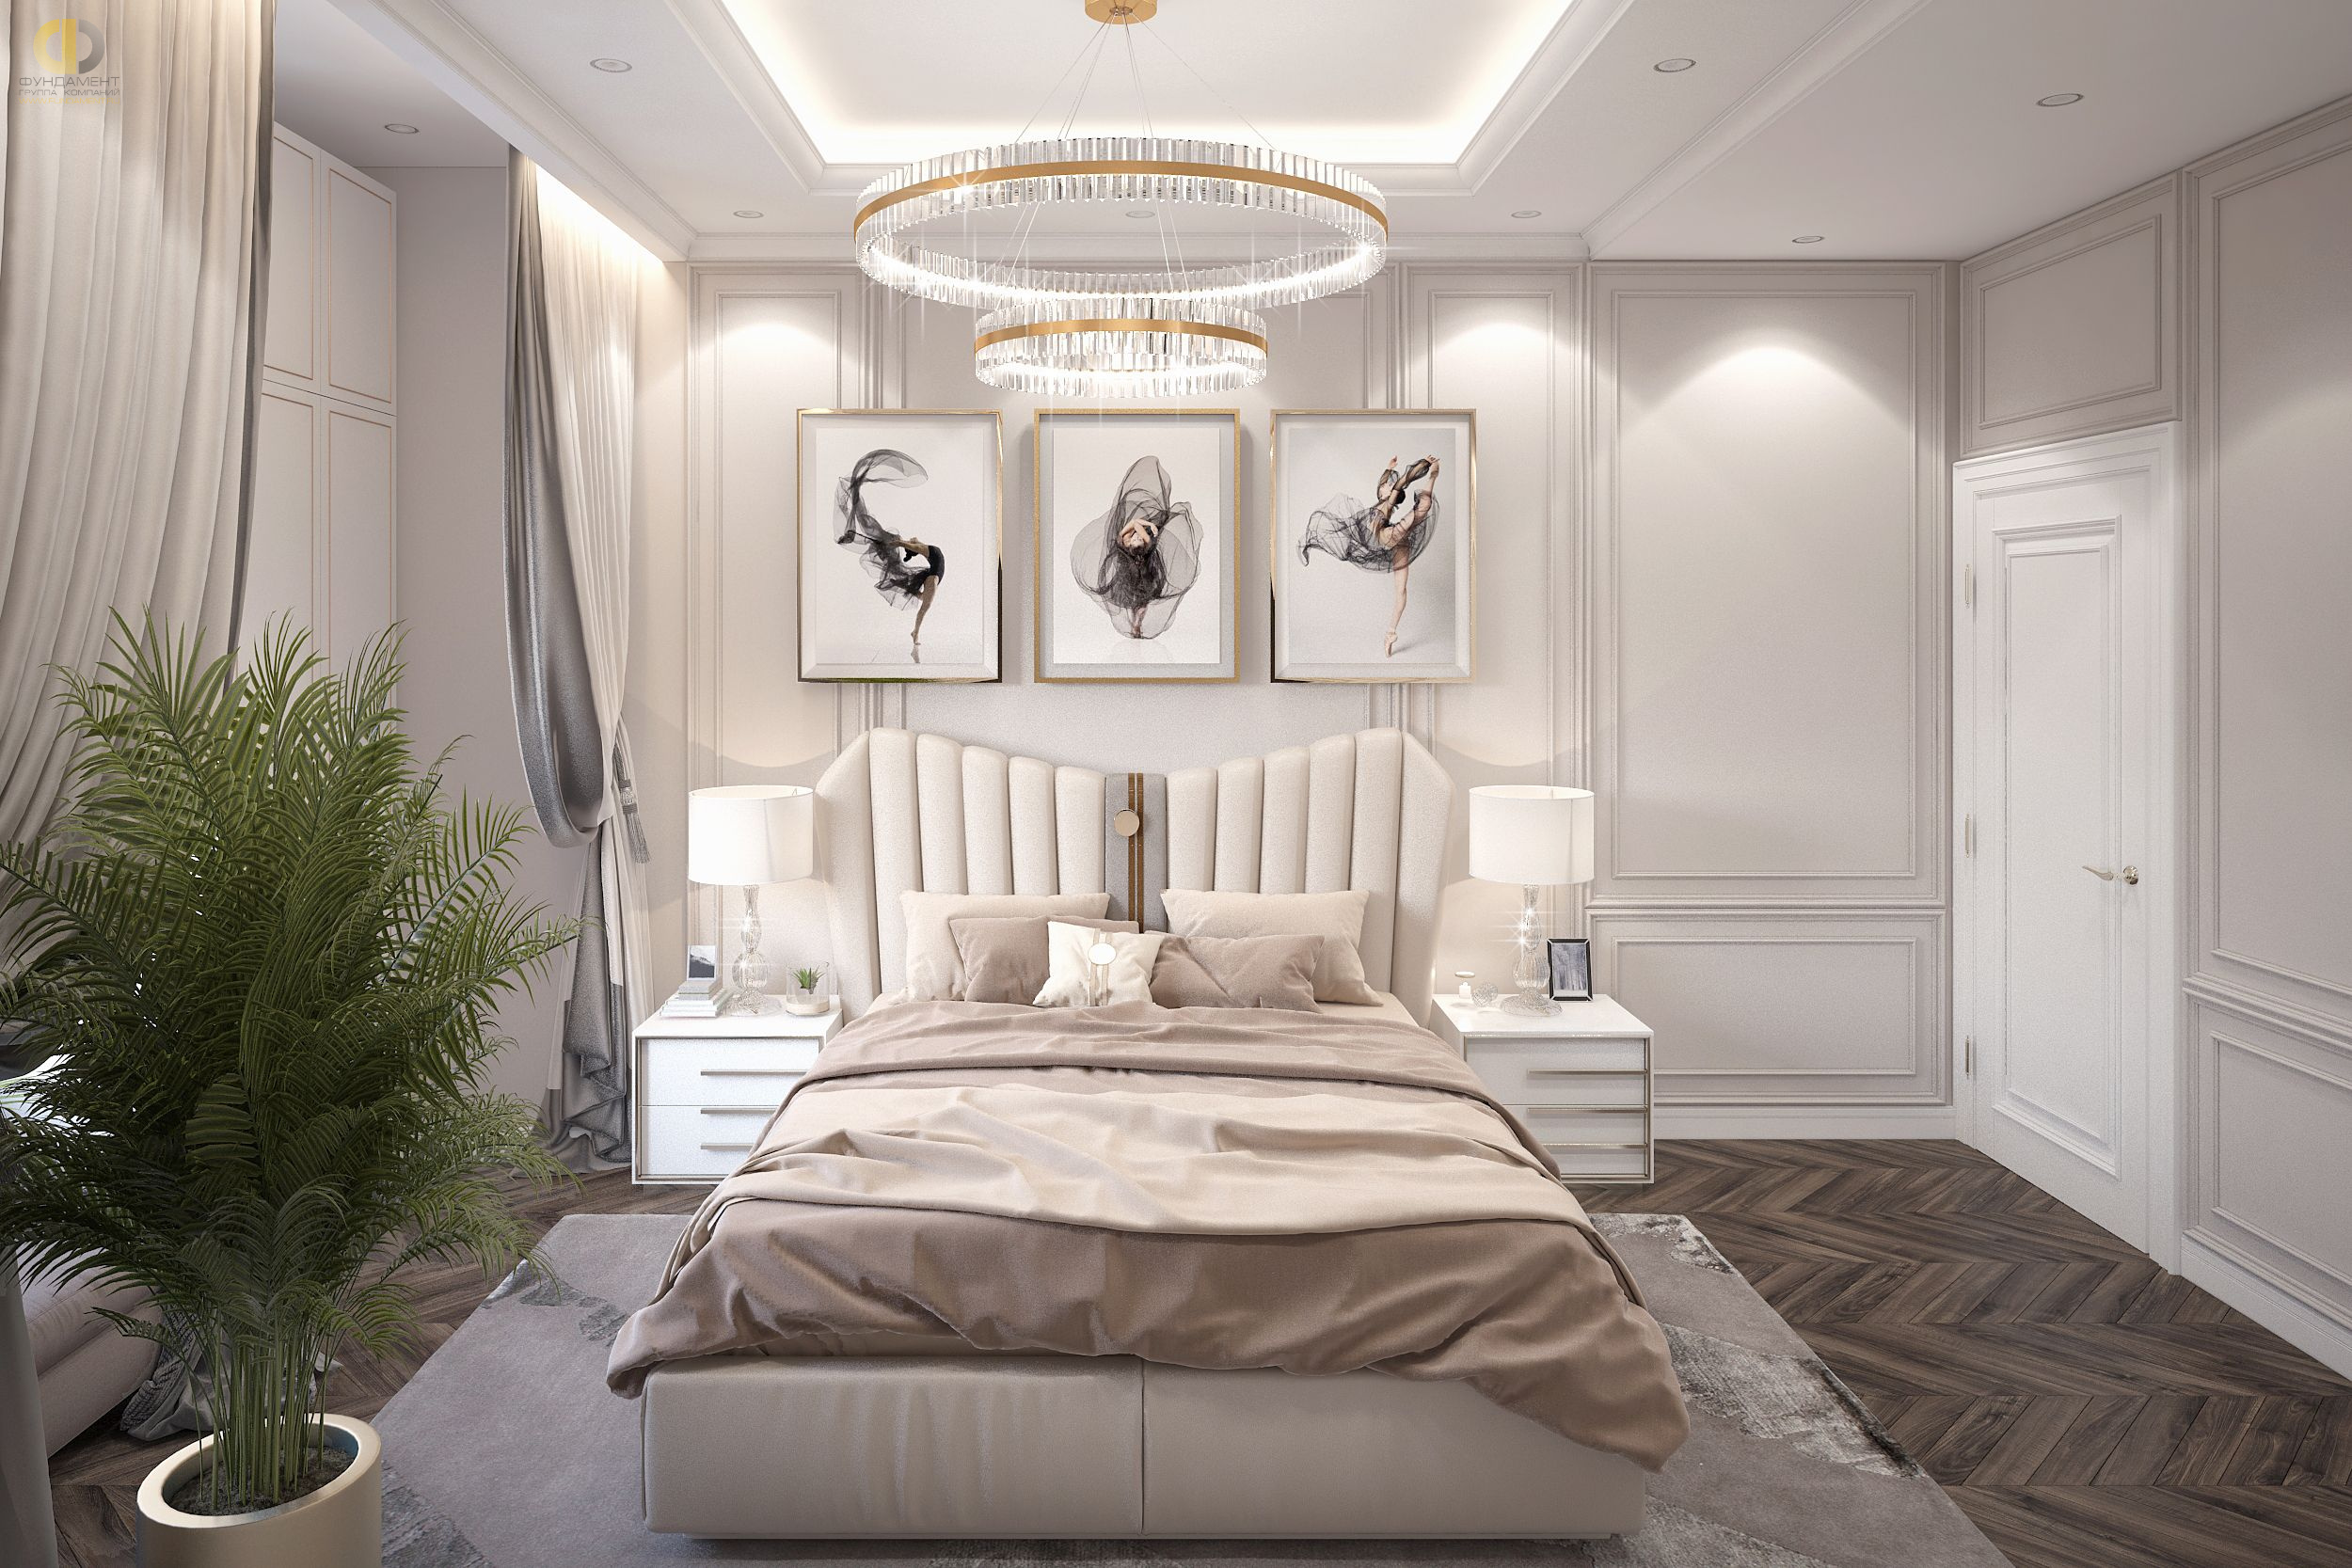 Спальня в стиле дизайна арт-деко (ар-деко) по адресу г. Москва, проезд Невельского, дом 3к1, 2021 года